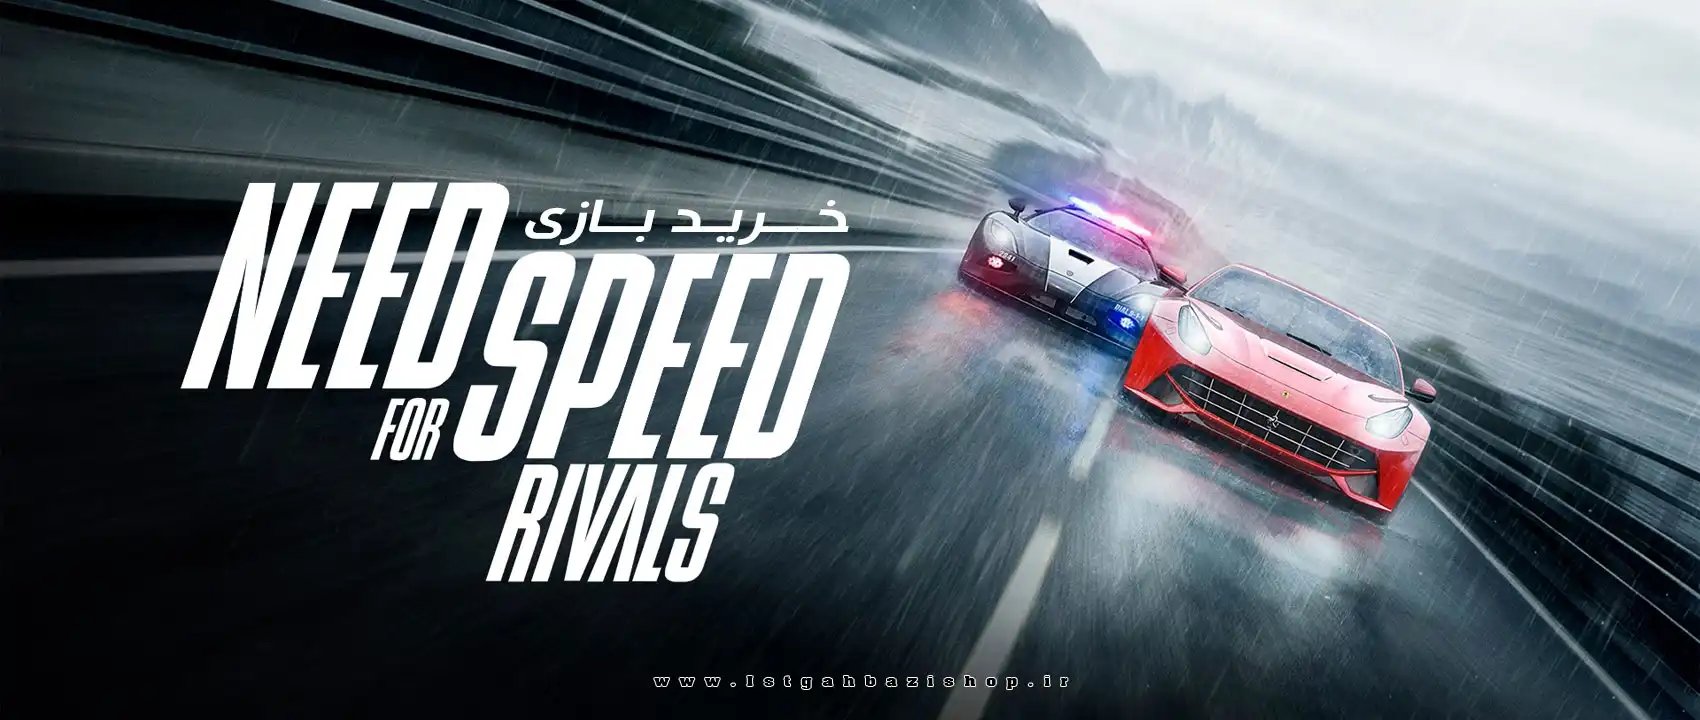 خرید بازی Need for Speed Rivals